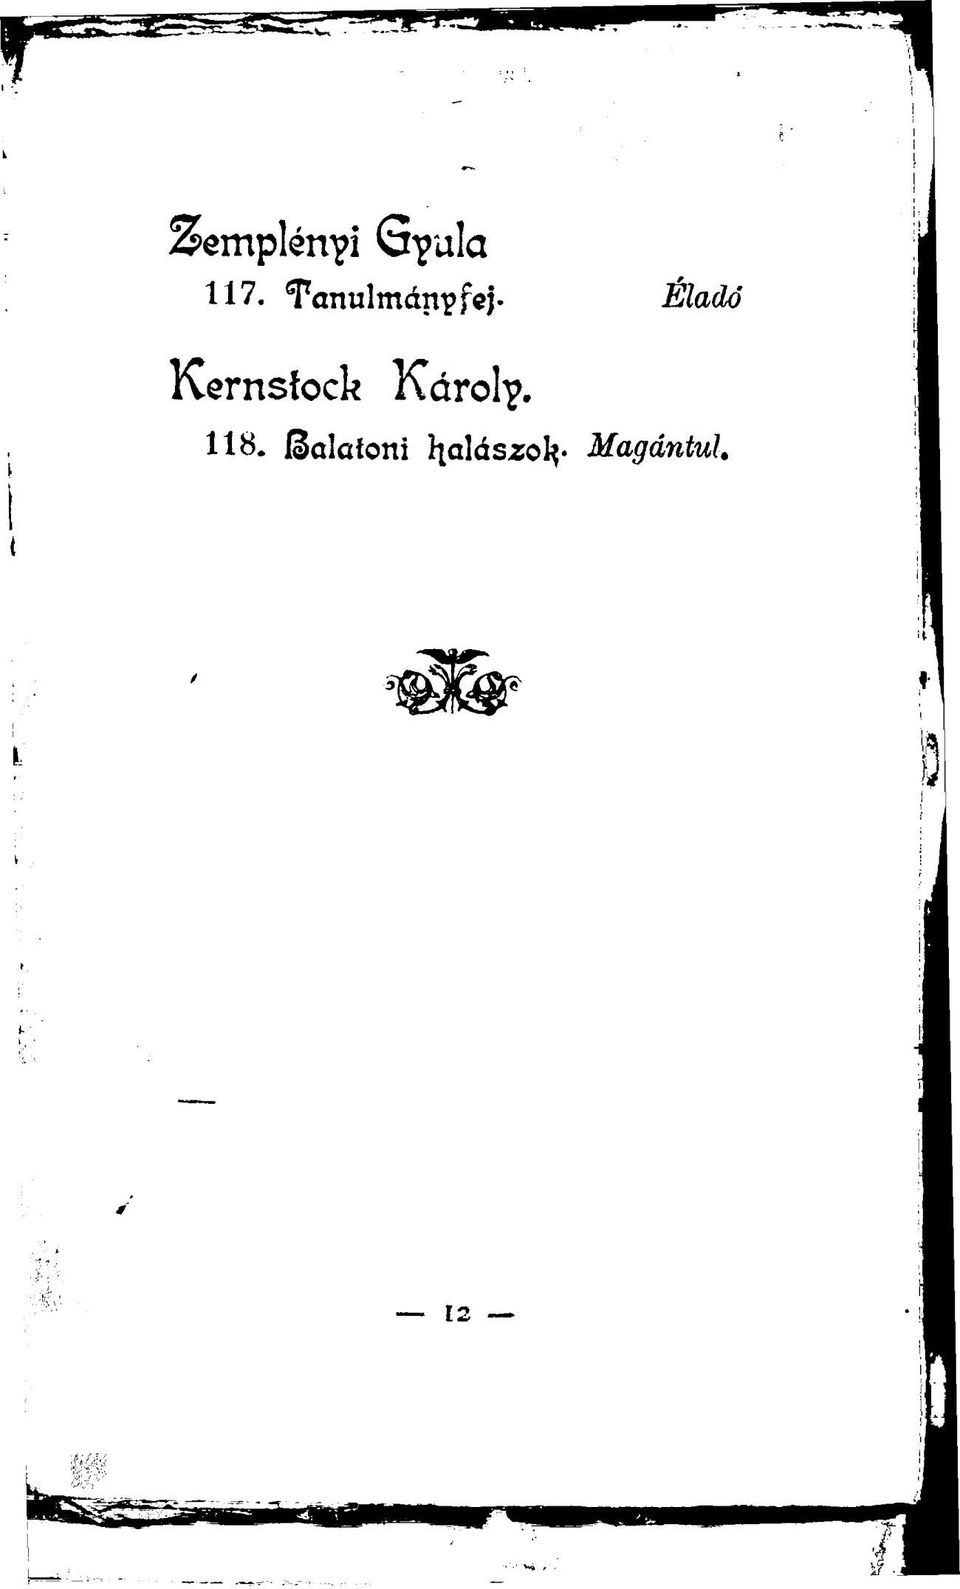 Kernstock Károly. 118.